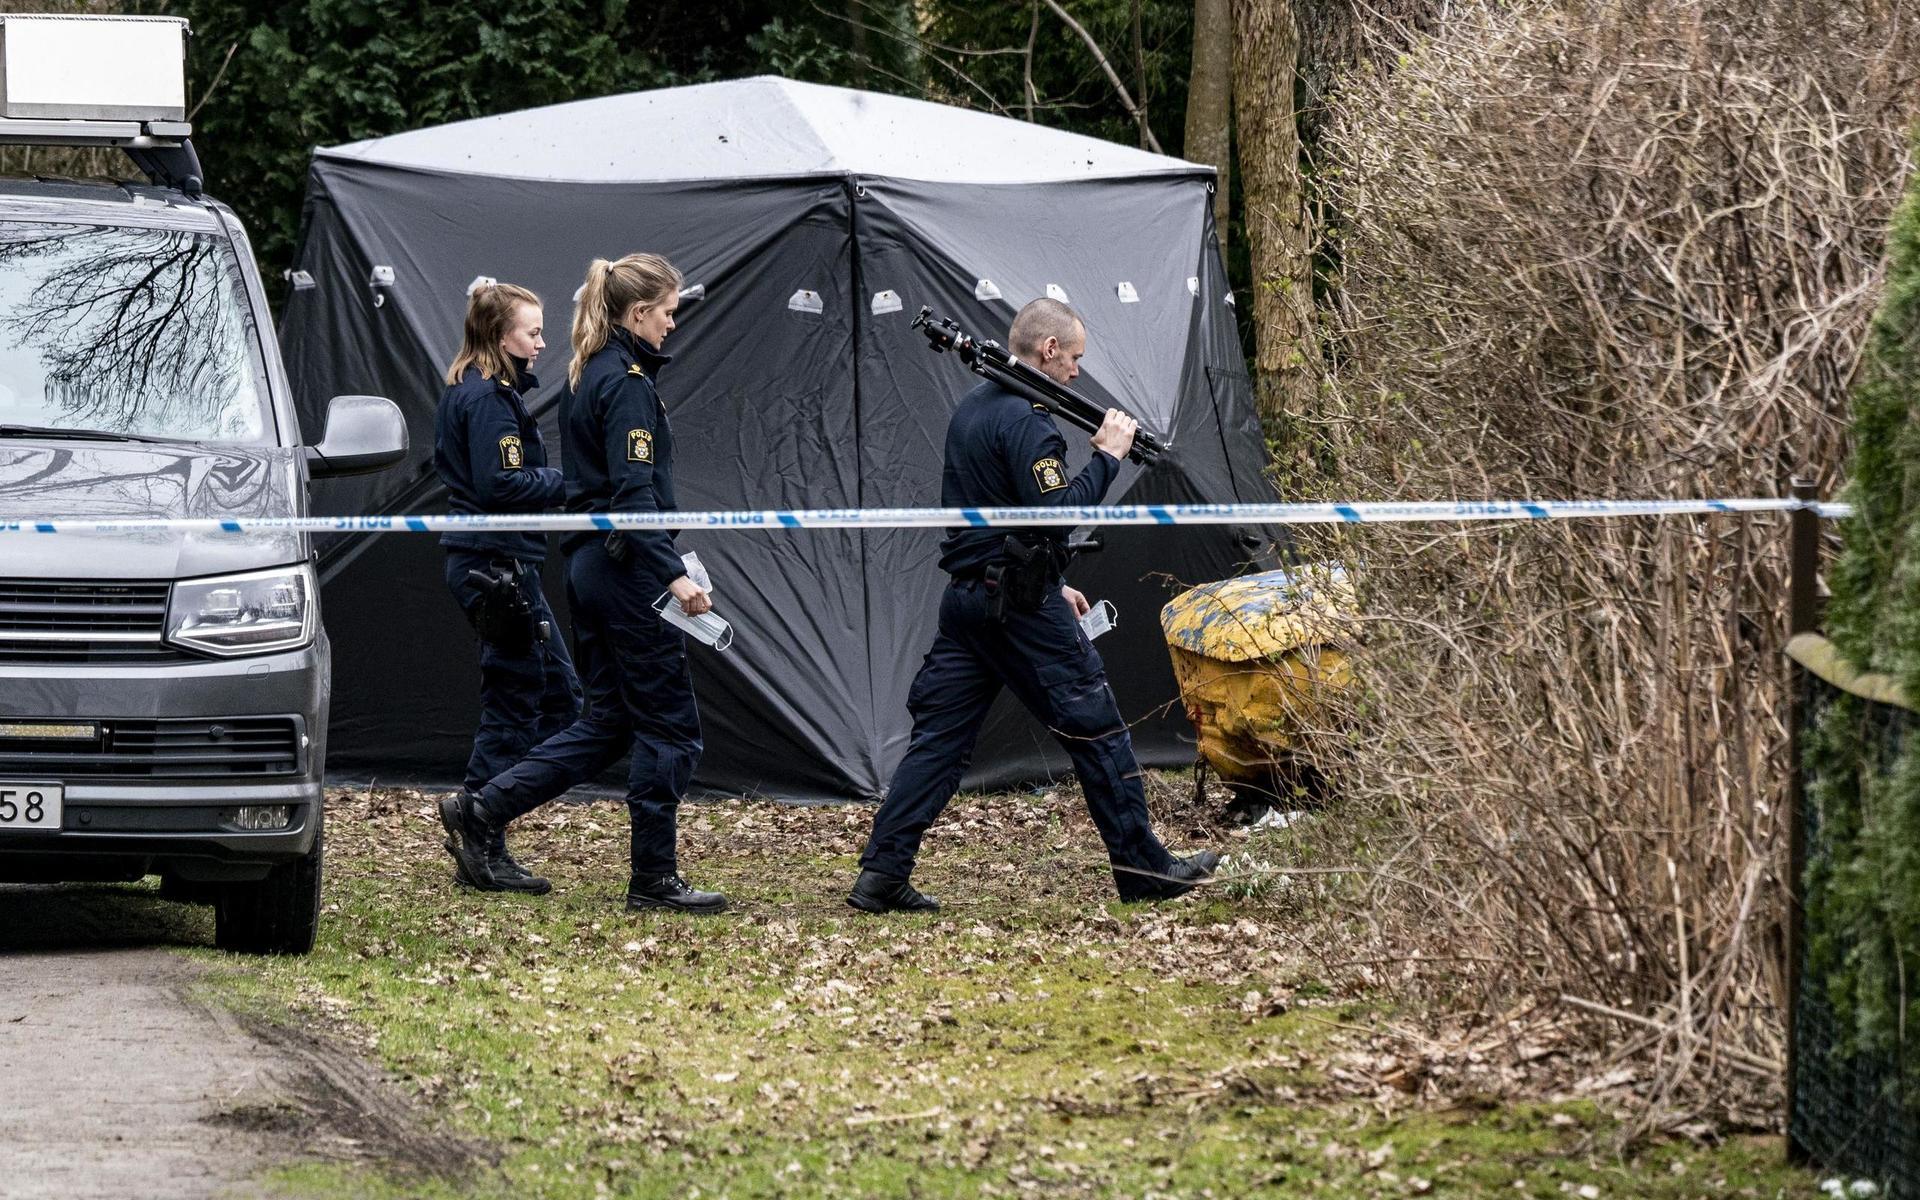 Den man som sitter anhållen misstänkt för mordet på en 18-årig kvinna i Höör har erkänt att han dödade henne men nekar till brott.
